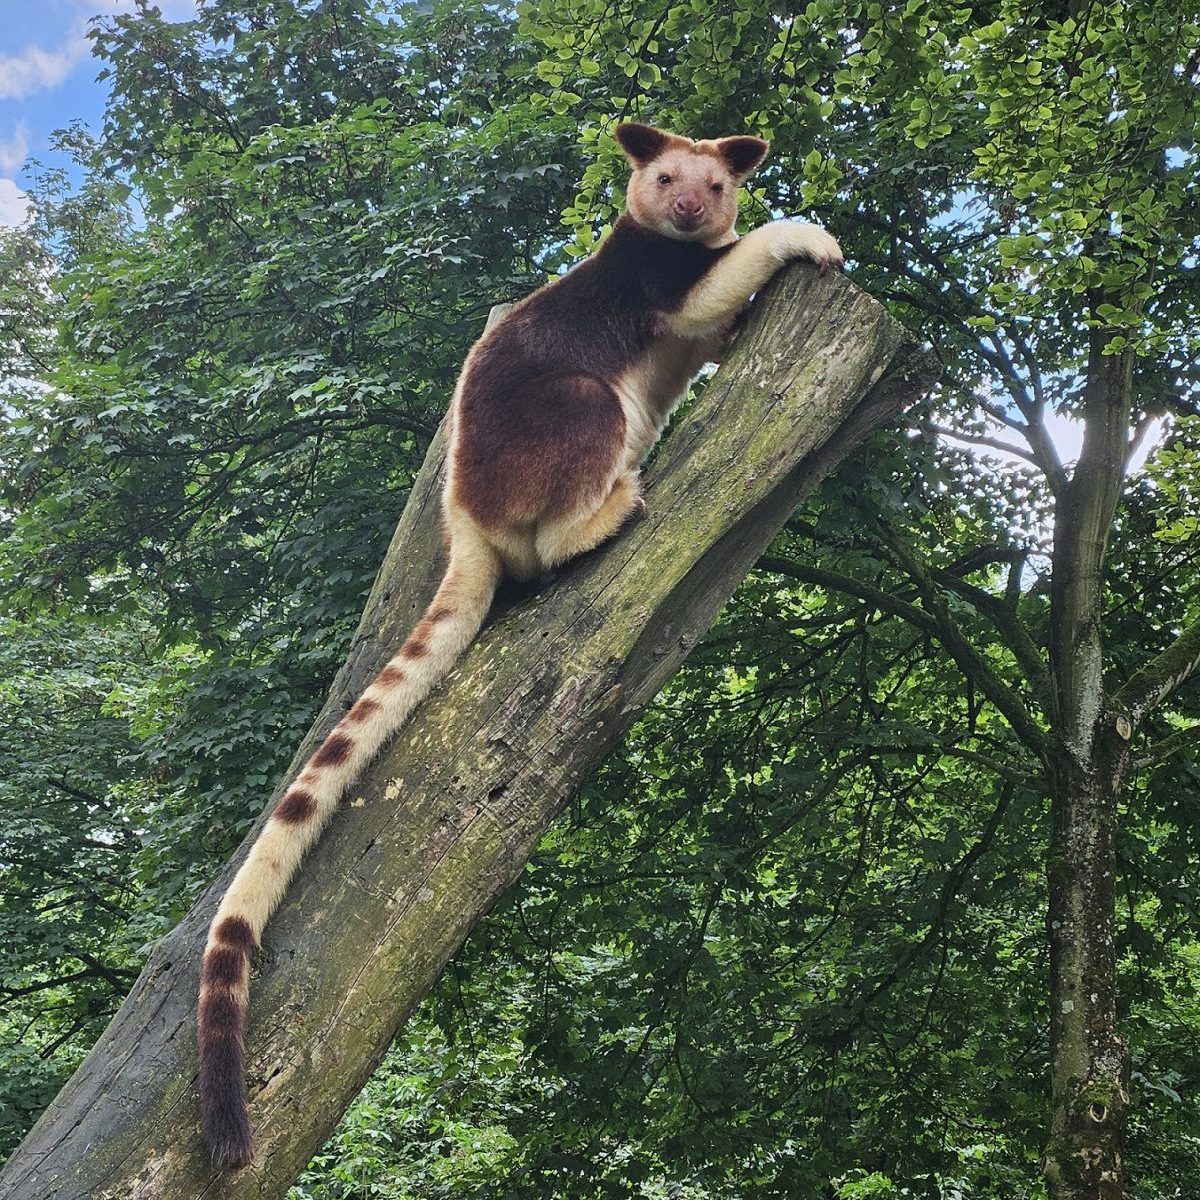 Zoo Duisburg: Blick ins Gehege lässt Besucher staunen – das gab es noch nie